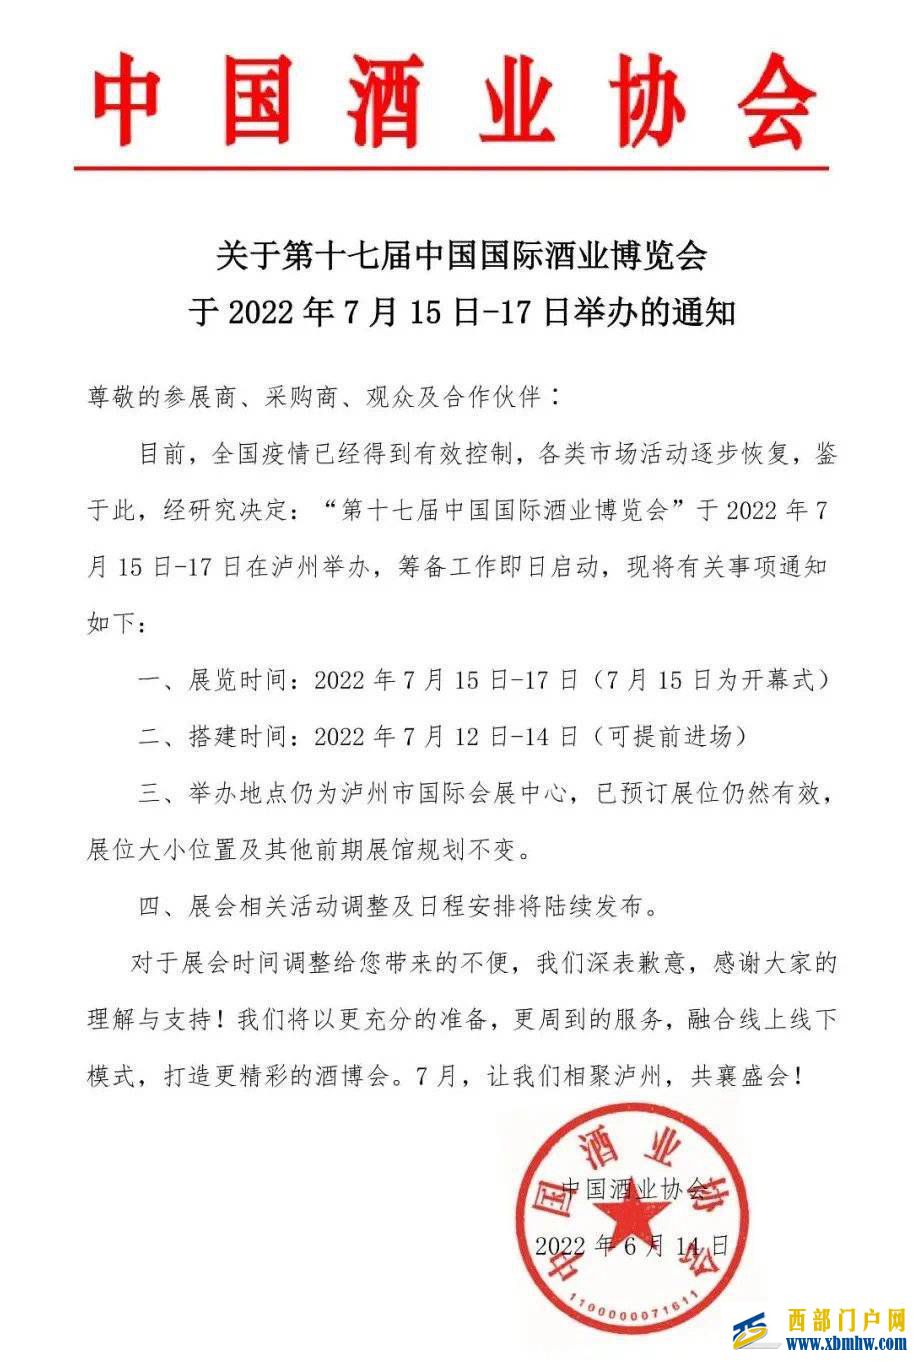 第十七届中国国际酒业博览会将于7月15日-17日在四川泸州举办(图1)